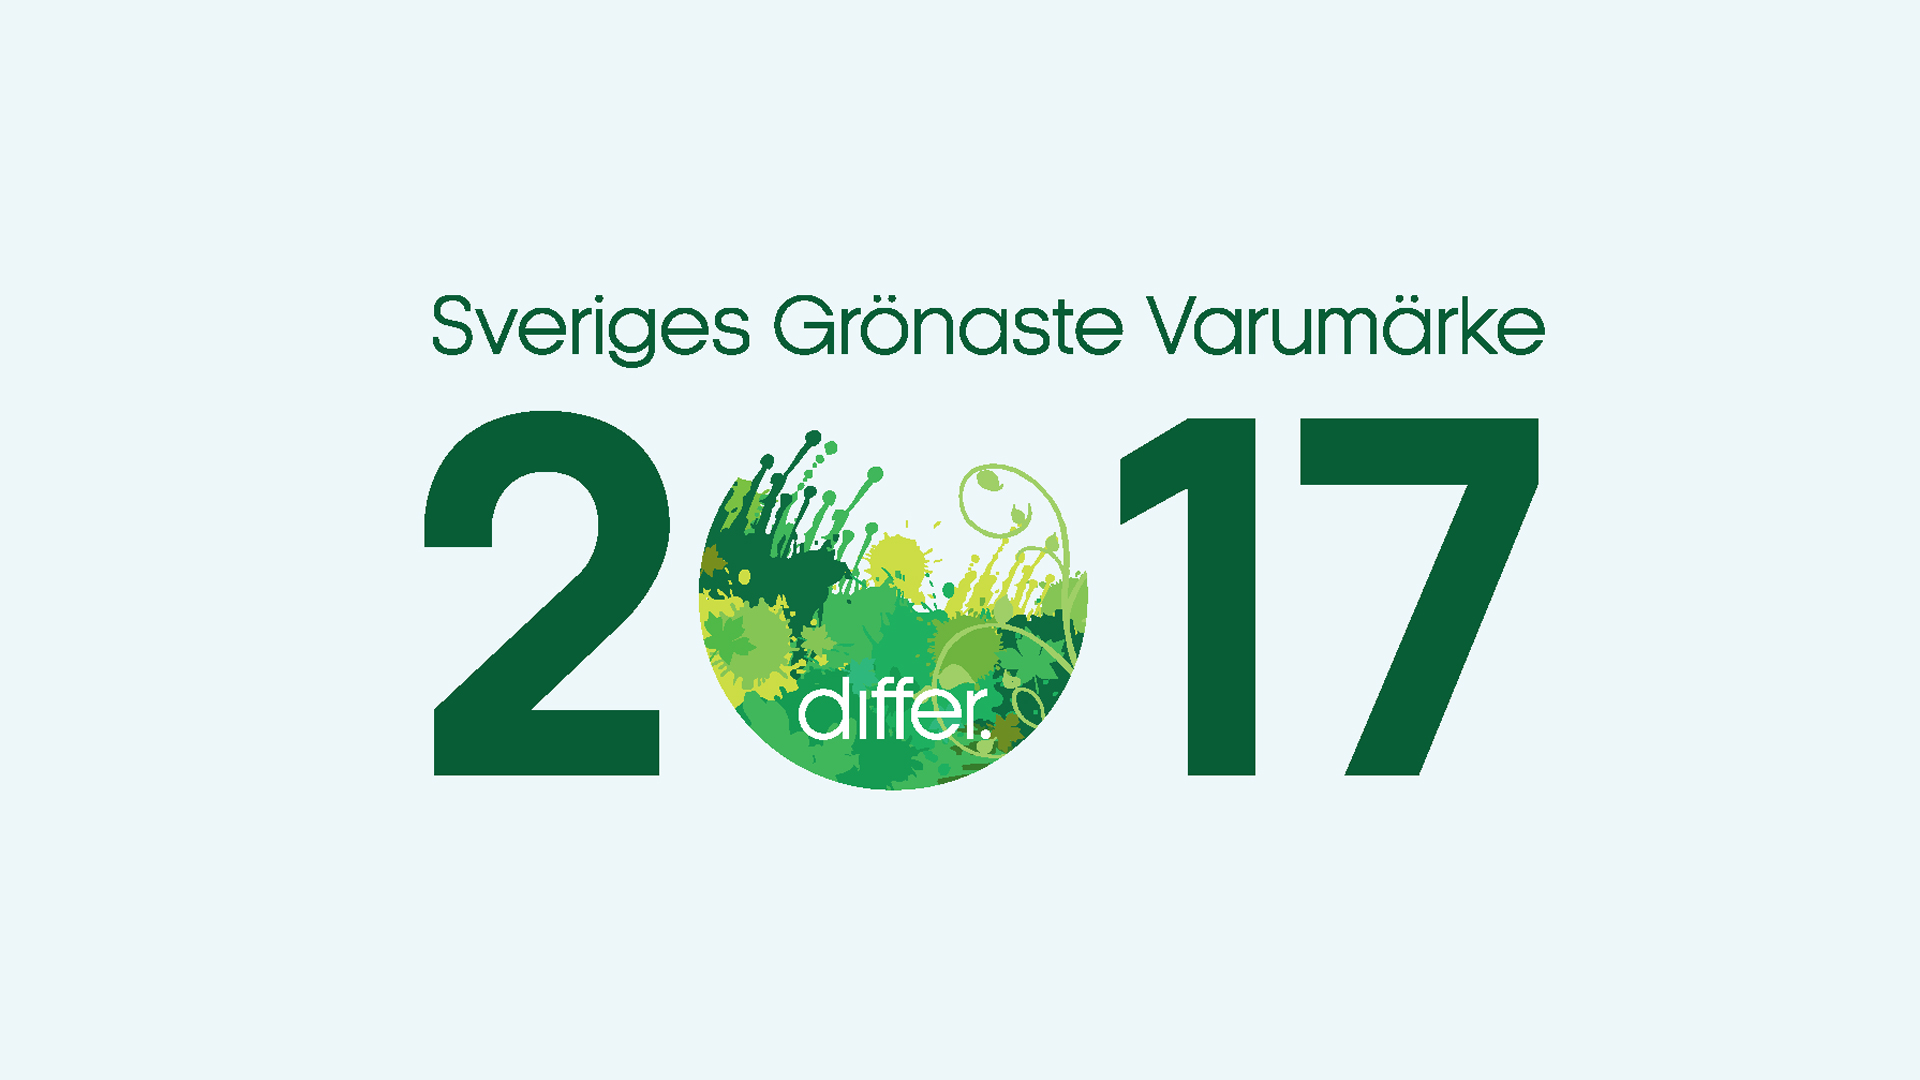 Sveriges grönaste varumärke. Illustration: Differ